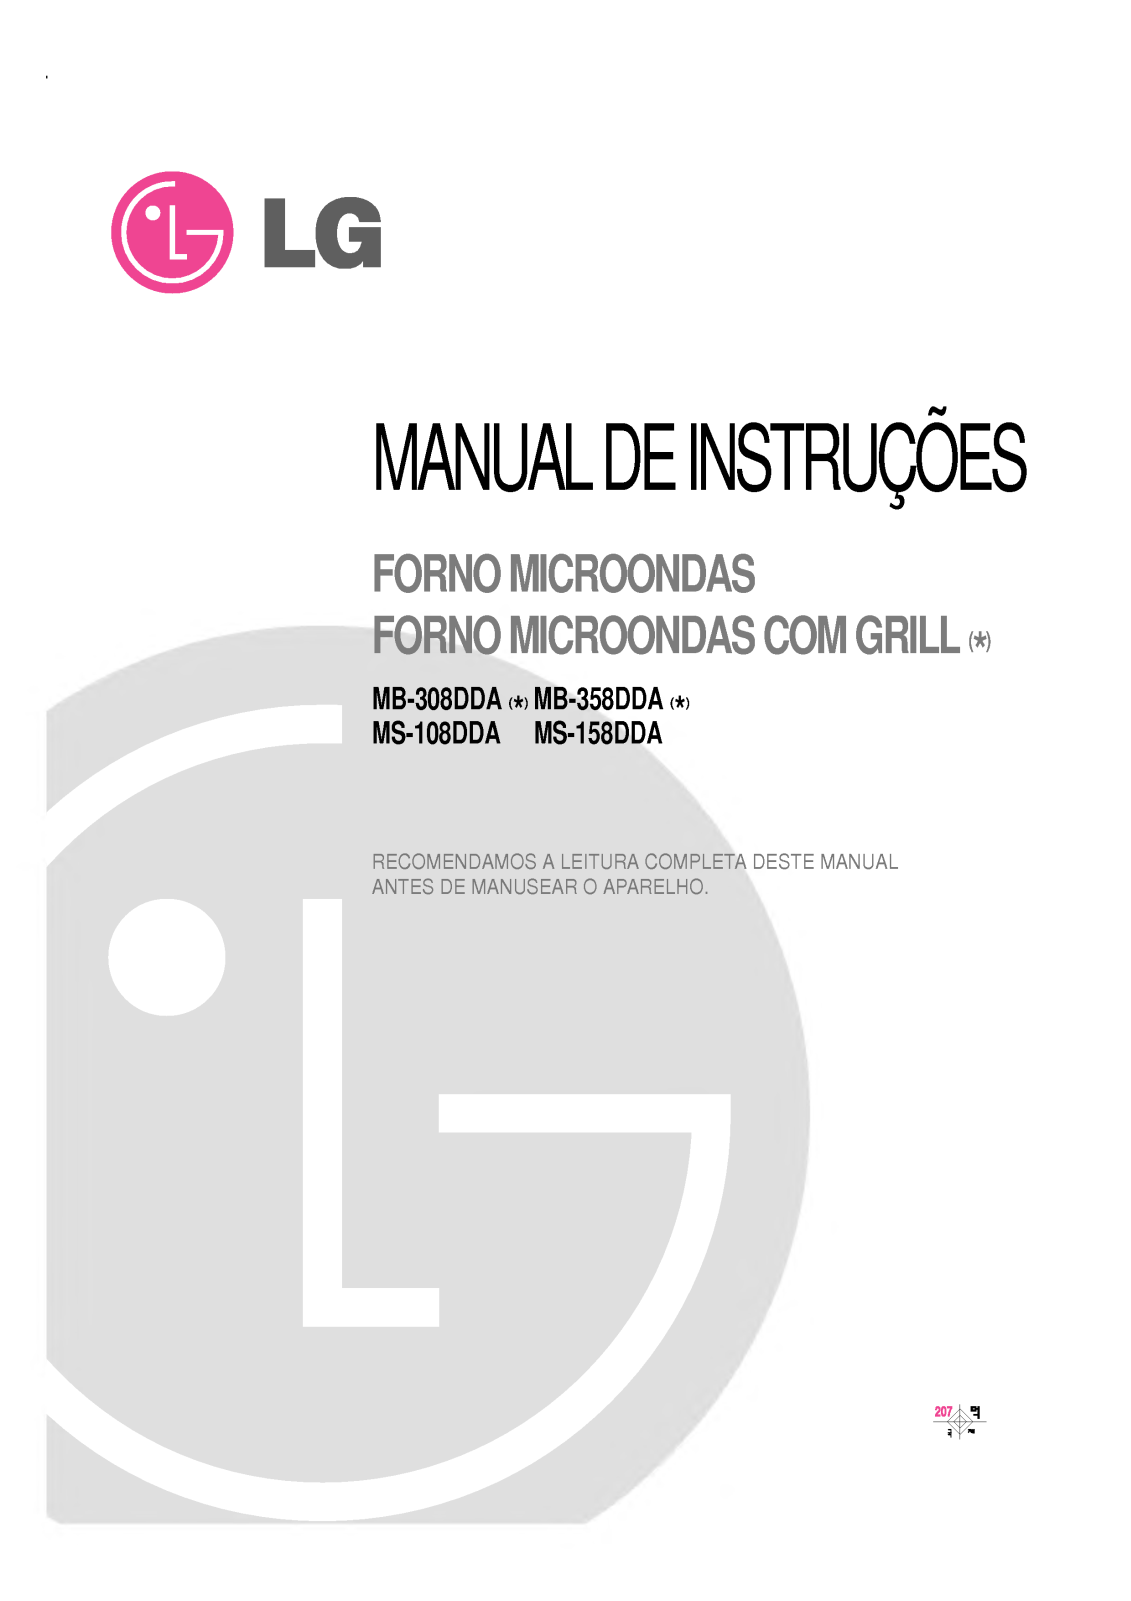 Lg MB-358DDA, MB-158DDA, MB-108DDA, MB-308DDA Instructions Manual